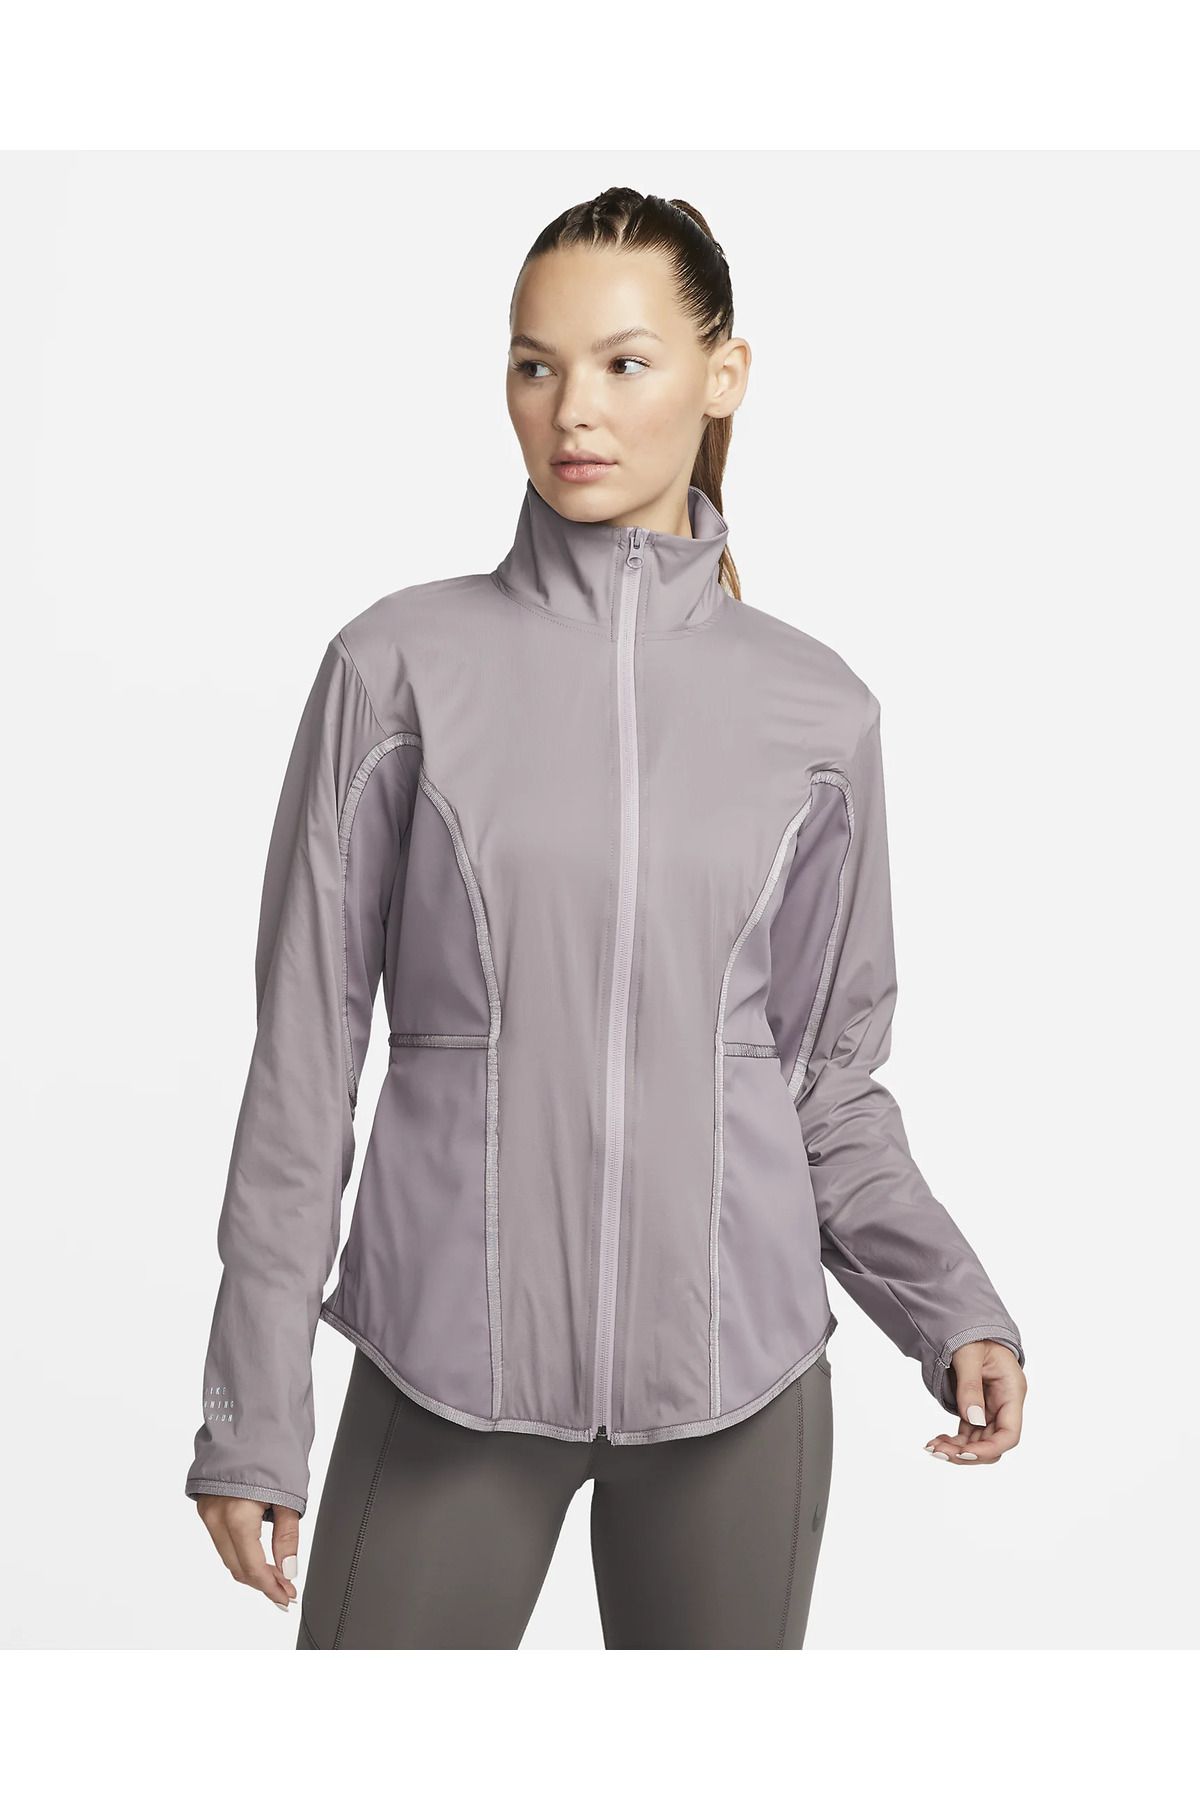 Nike Storm-FIT Kadın Koşu Ceketi